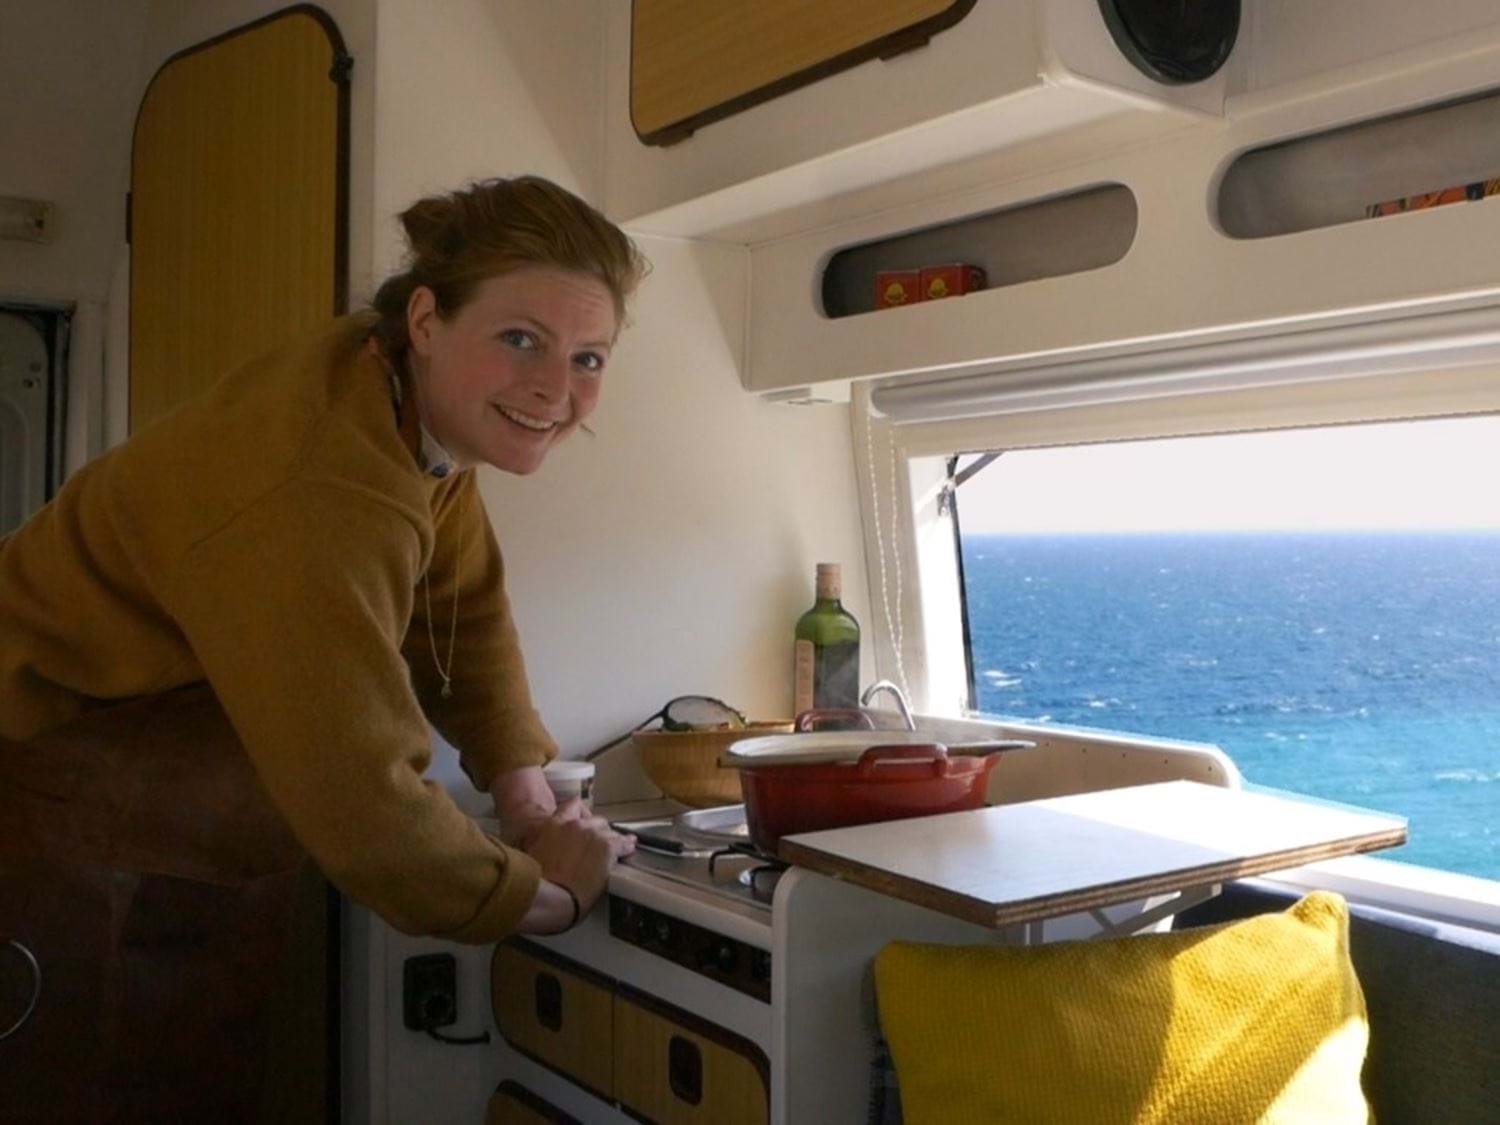 Koken in camper met uitzicht op zee